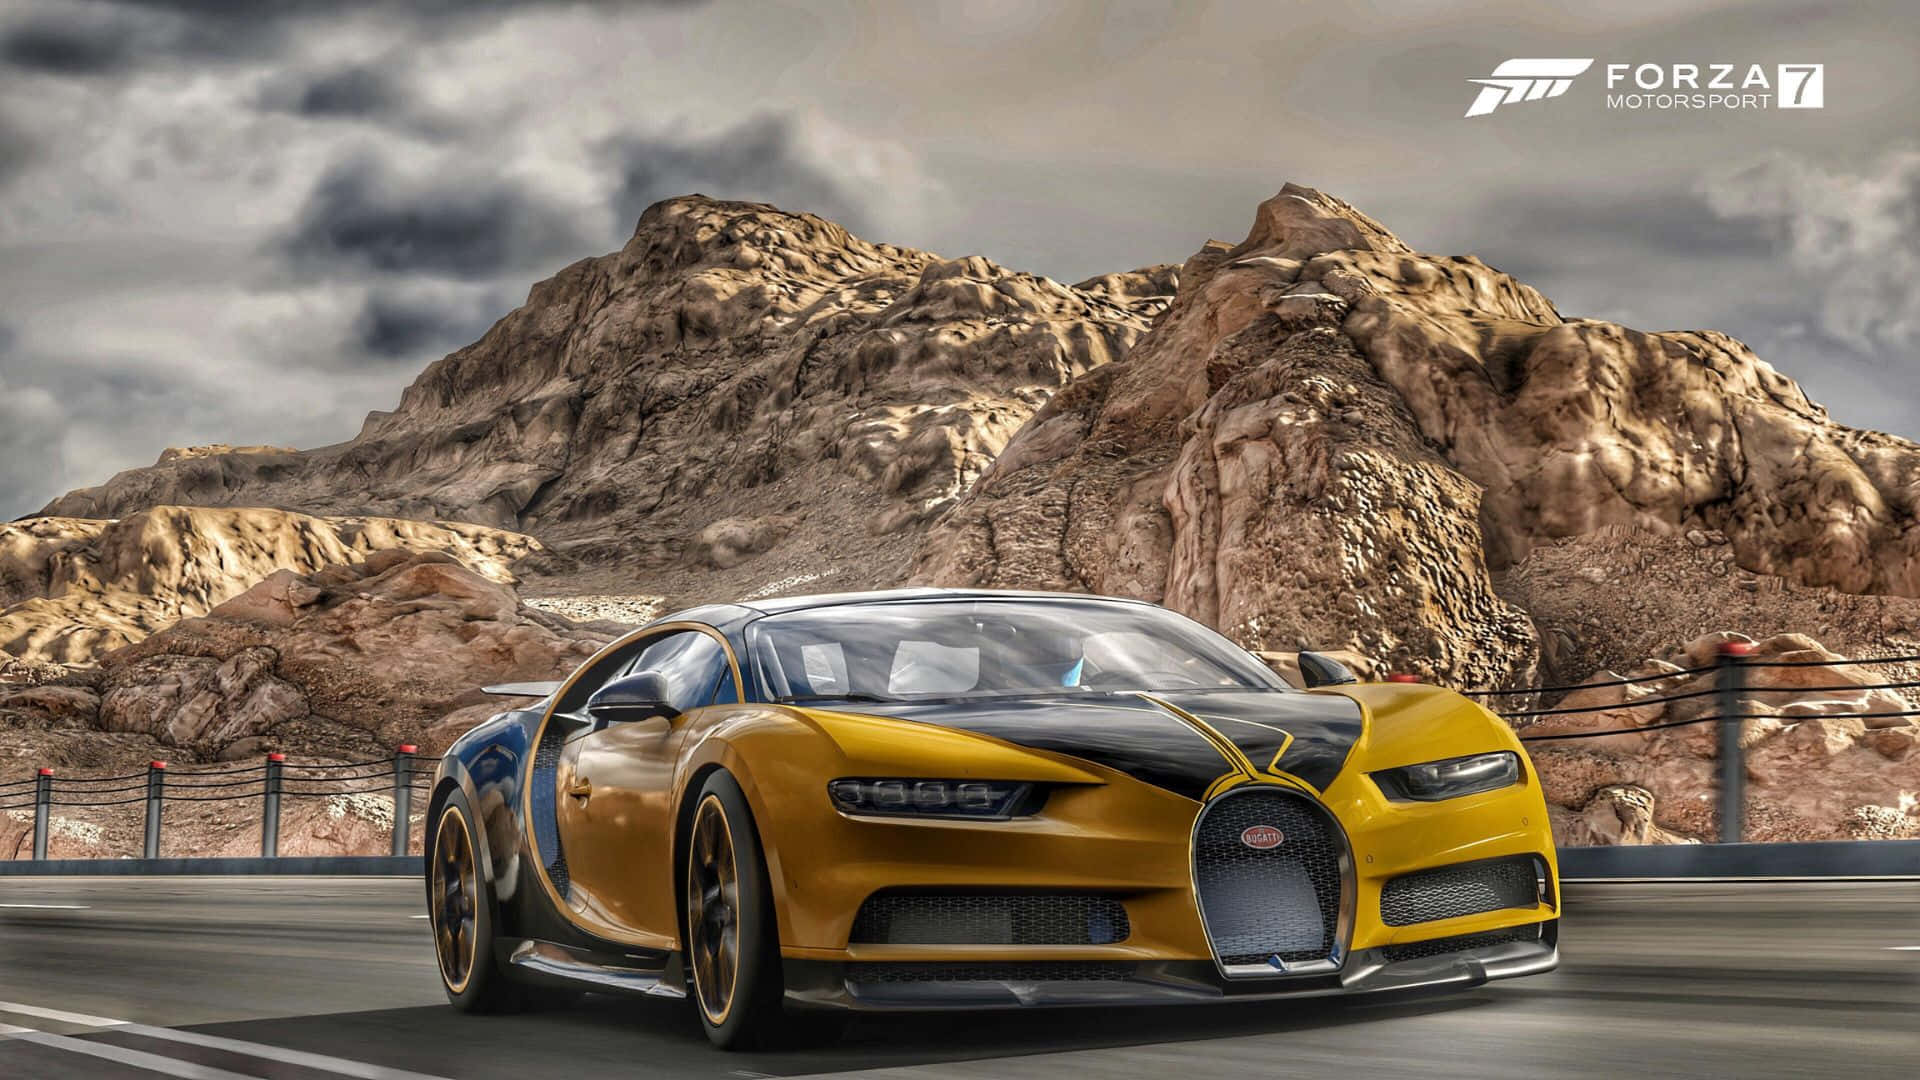 Hdbakgrundsbild För Forza Motorsport 7 & Bugatti Chiron